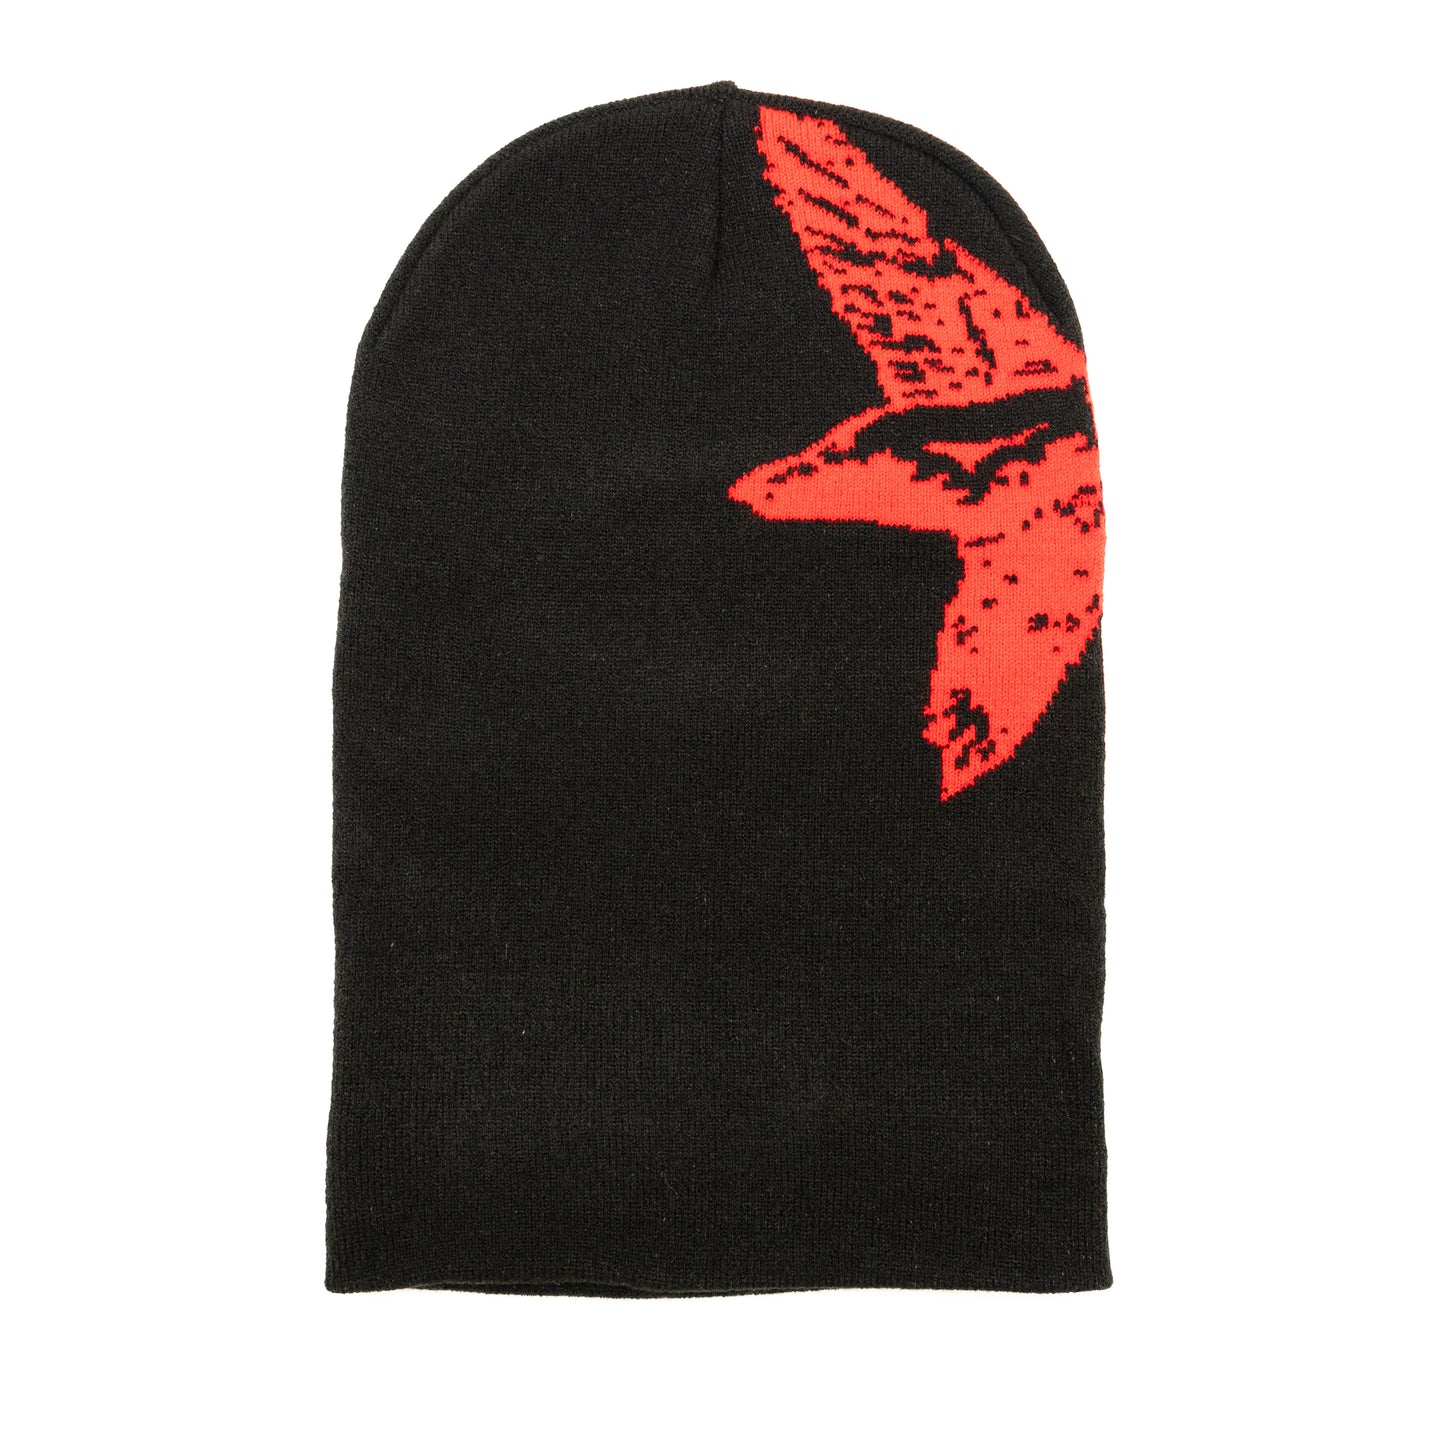 Flying Duck Ski Mask, Black/Red